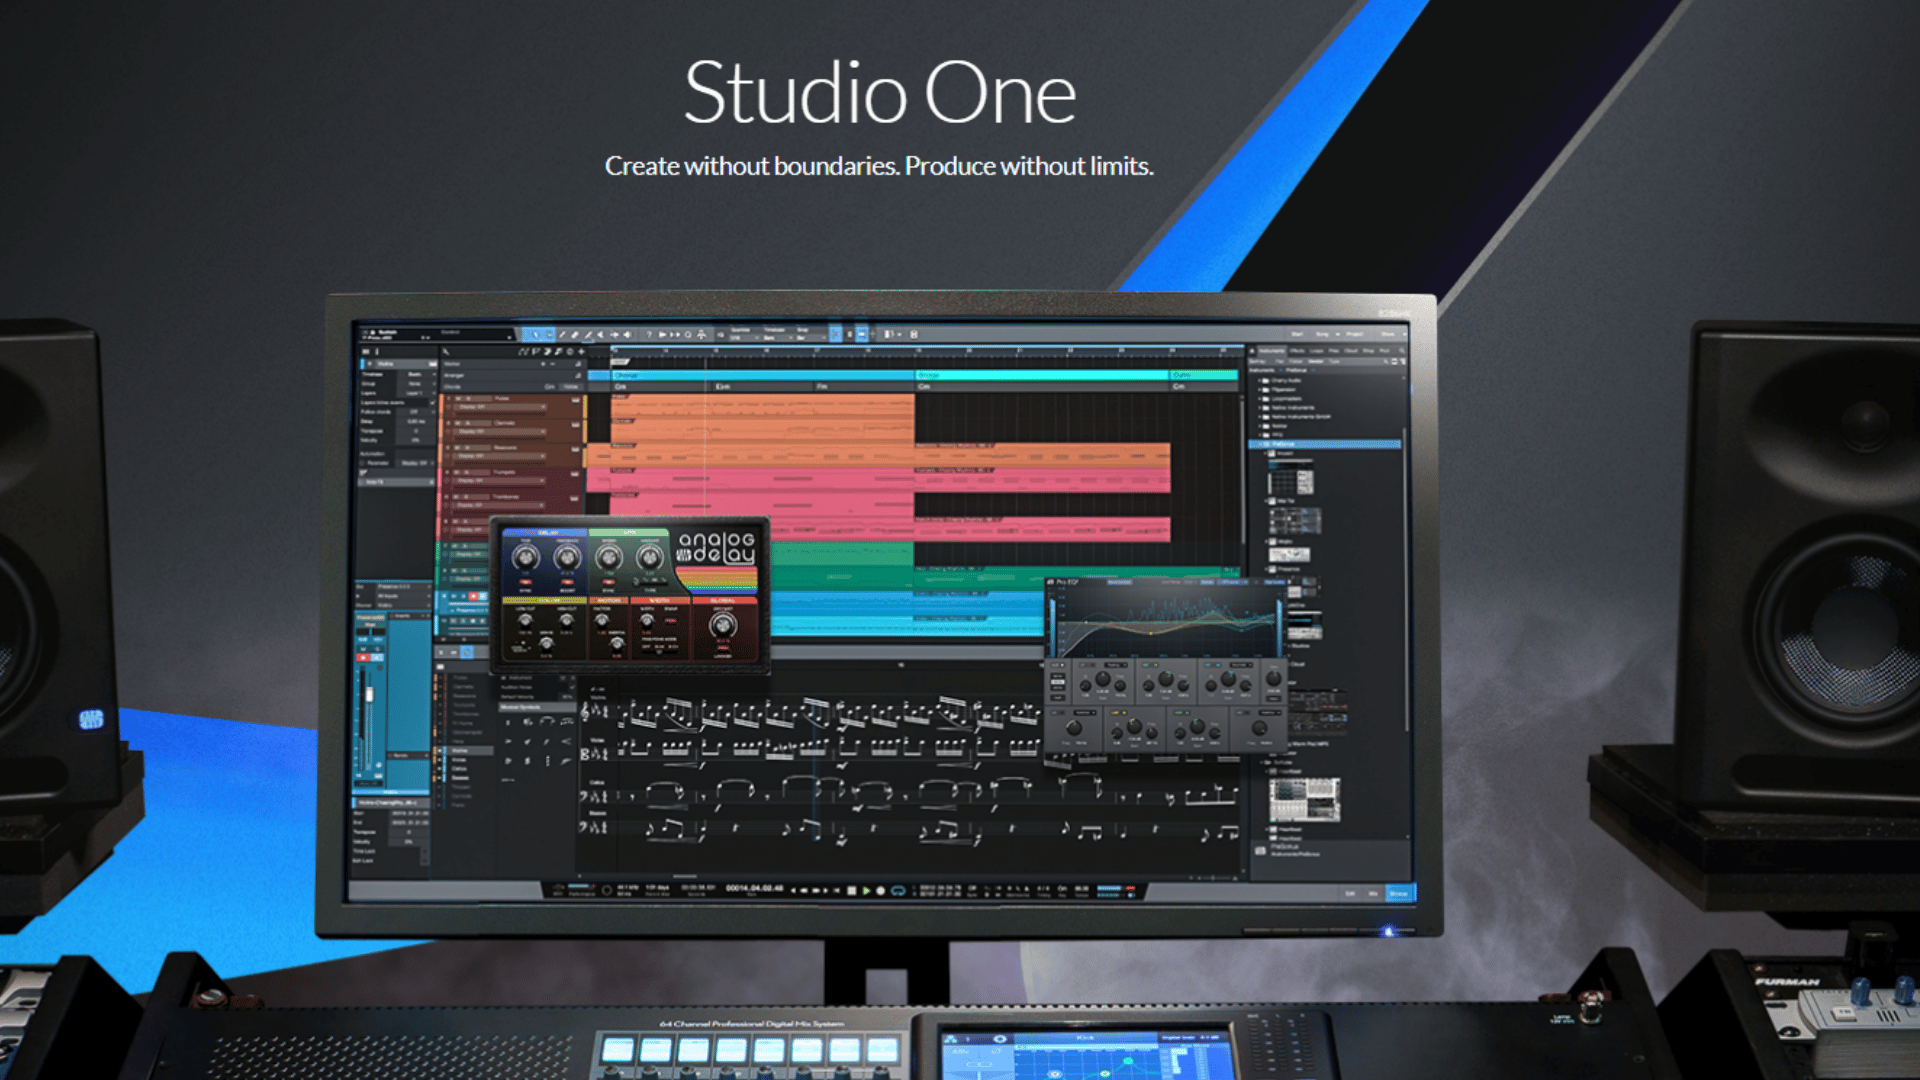 Studio One 5